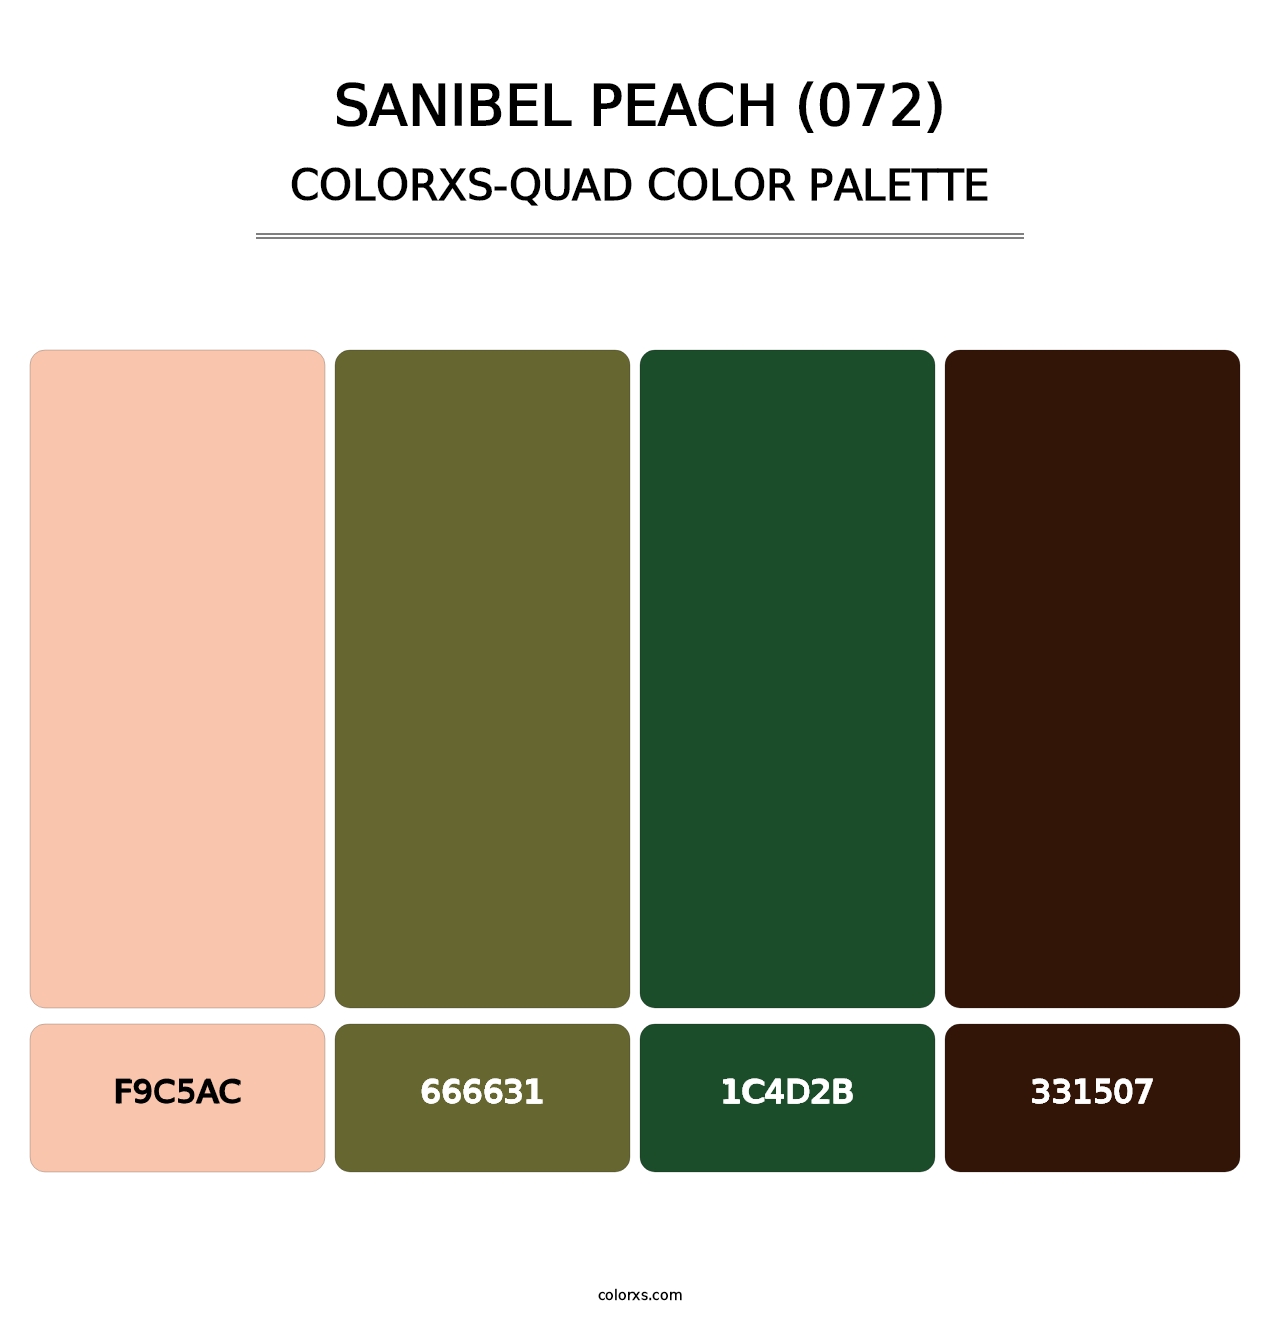 Sanibel Peach (072) - Colorxs Quad Palette